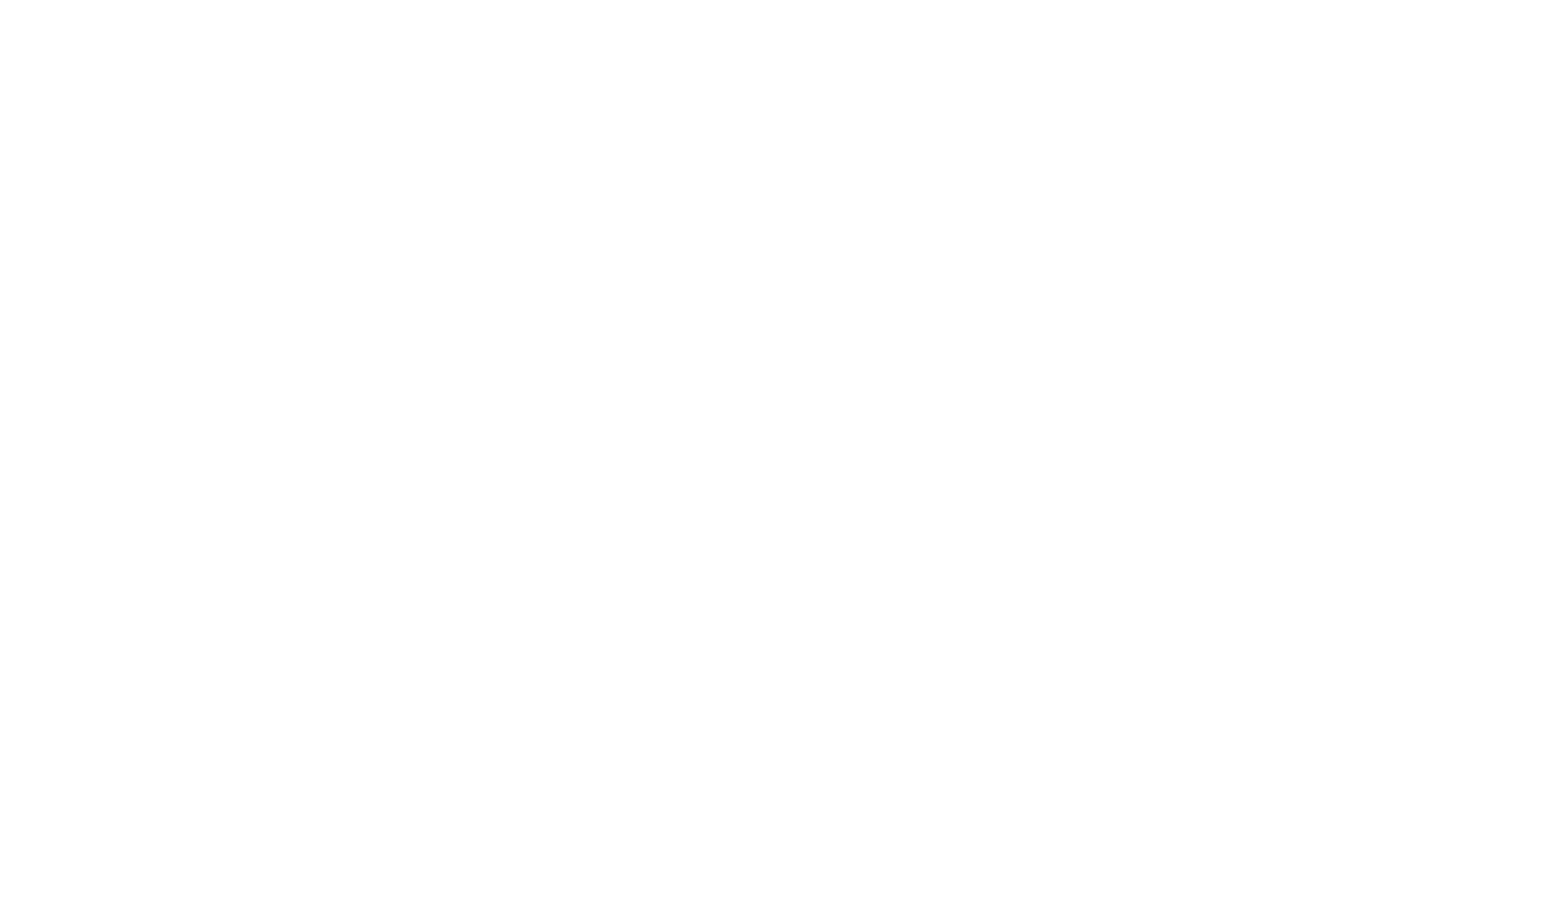 Hermès logo grand pour les fonds sombres (PNG transparent)